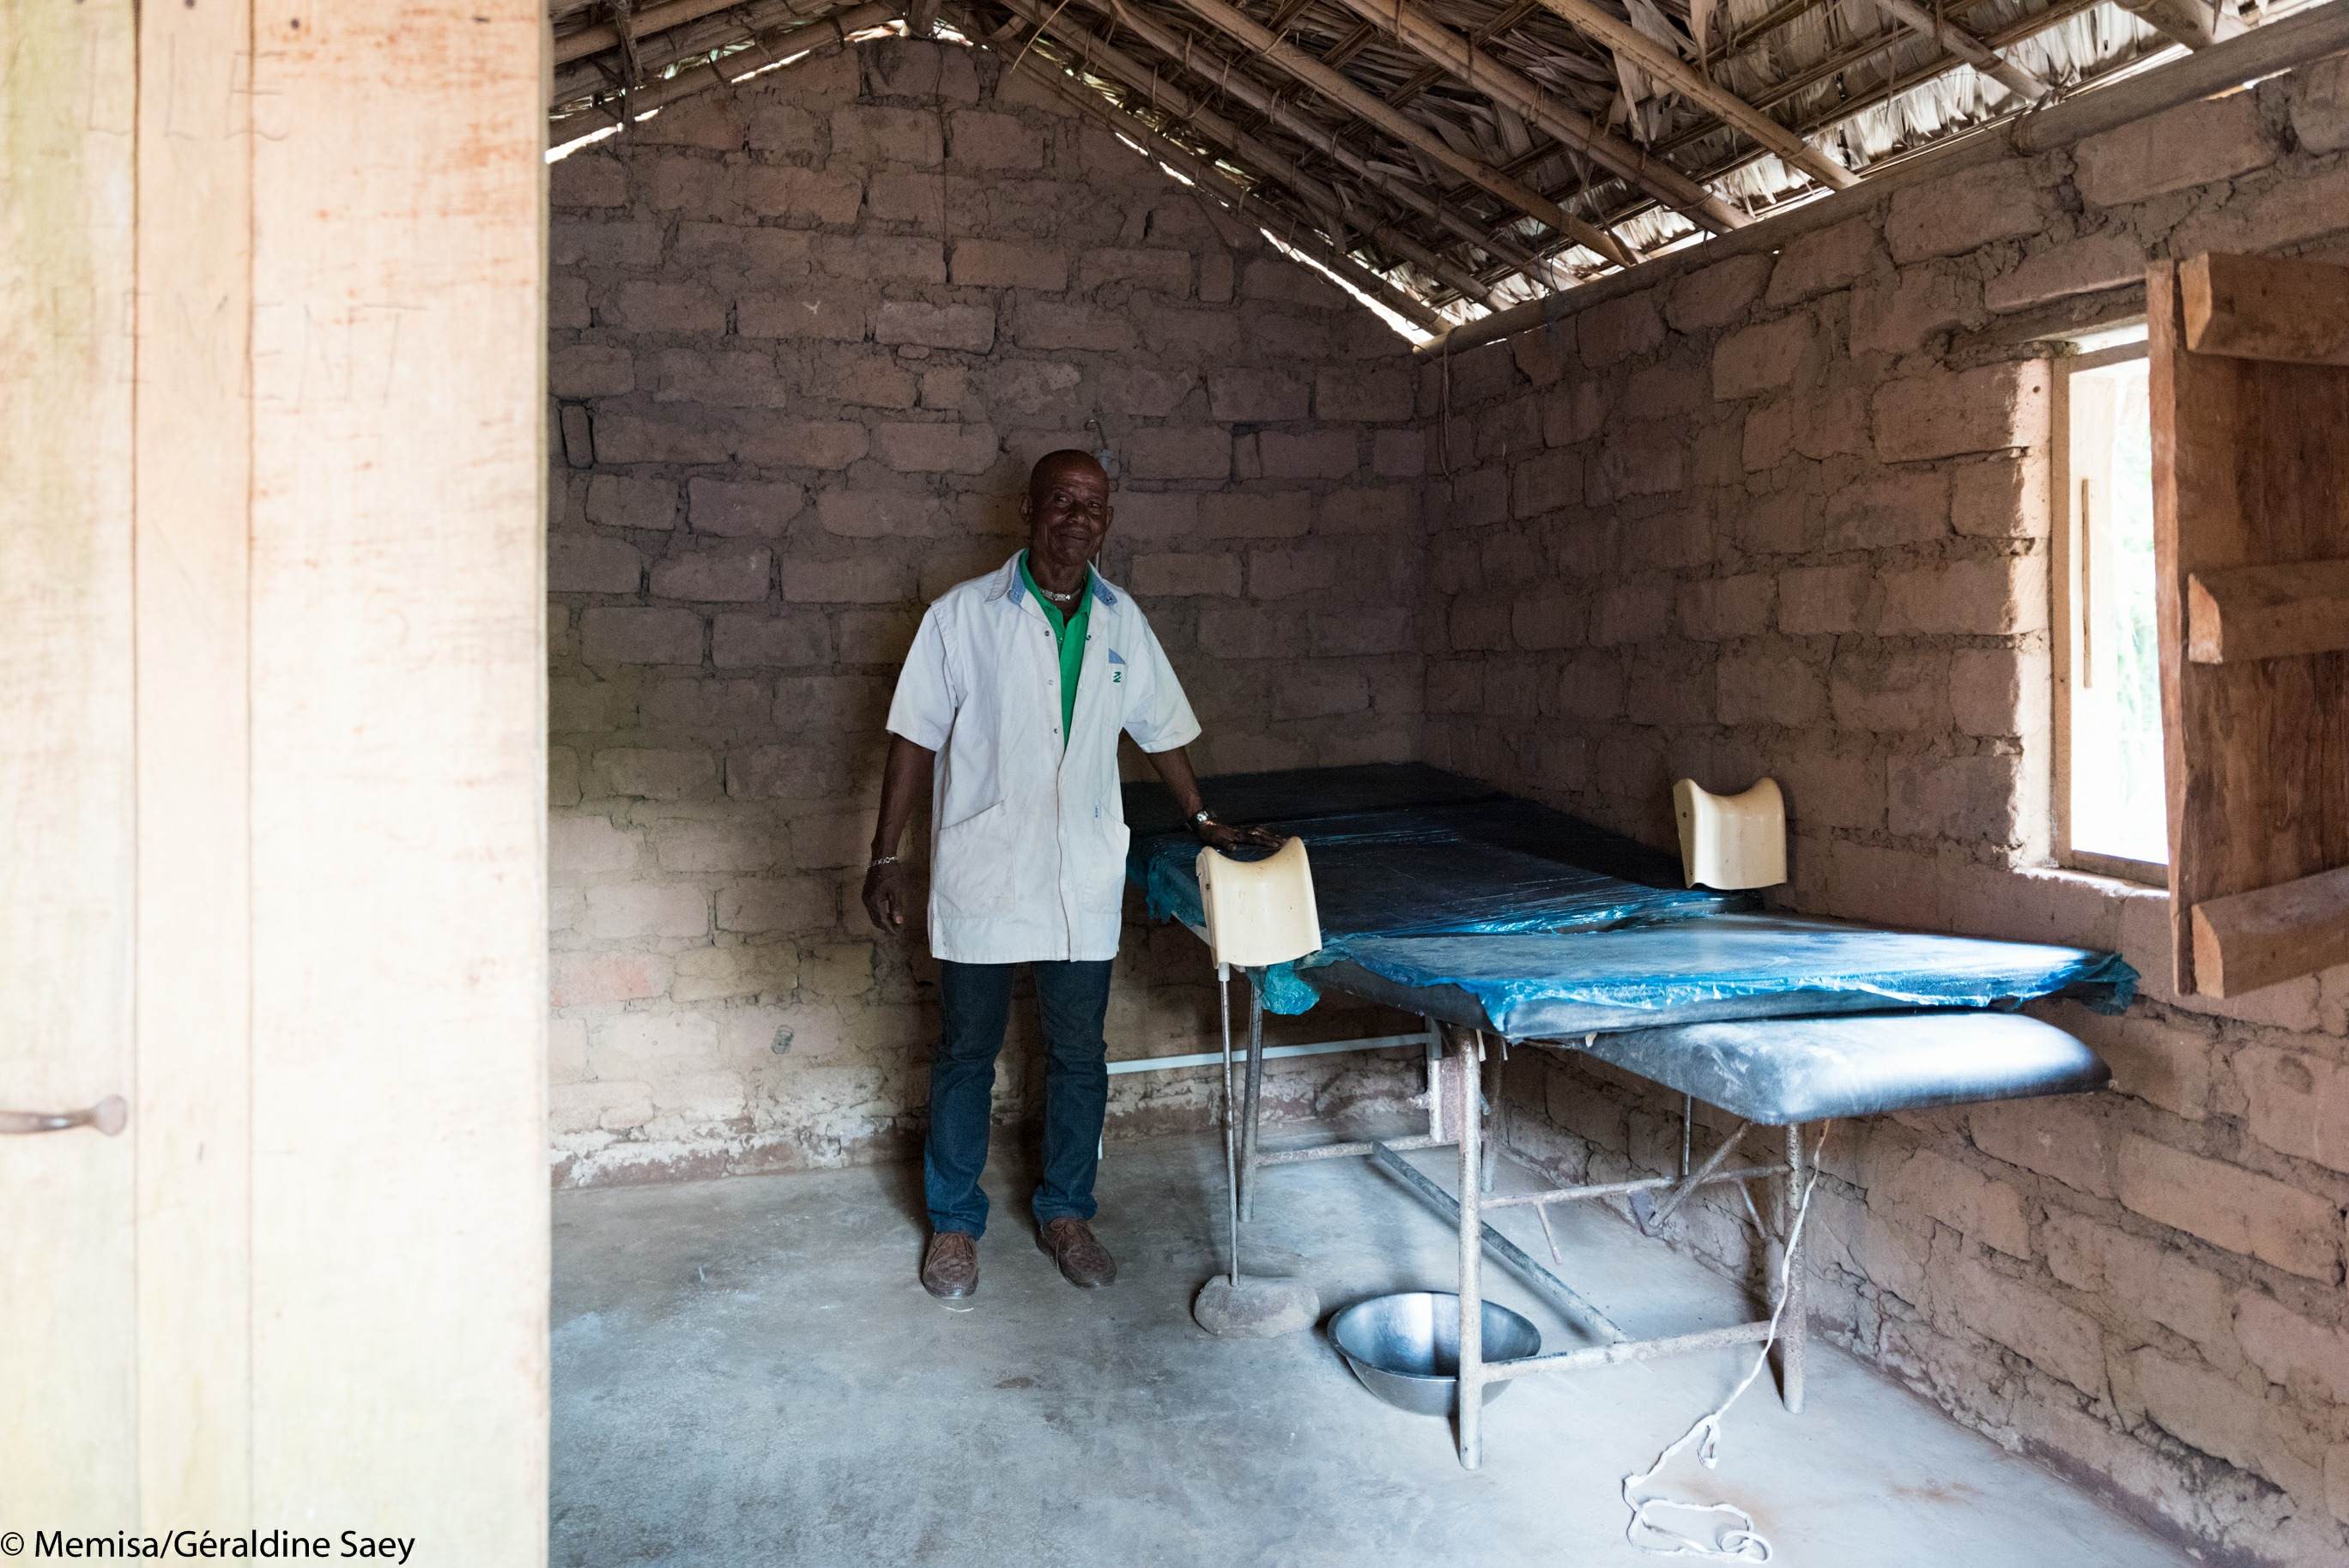 Gervais is radioloog in het ziekenhuis van Gombe-Matadi en verantwoordelijk voor het nemen van echografieën. Hij doet zijn werk graag.